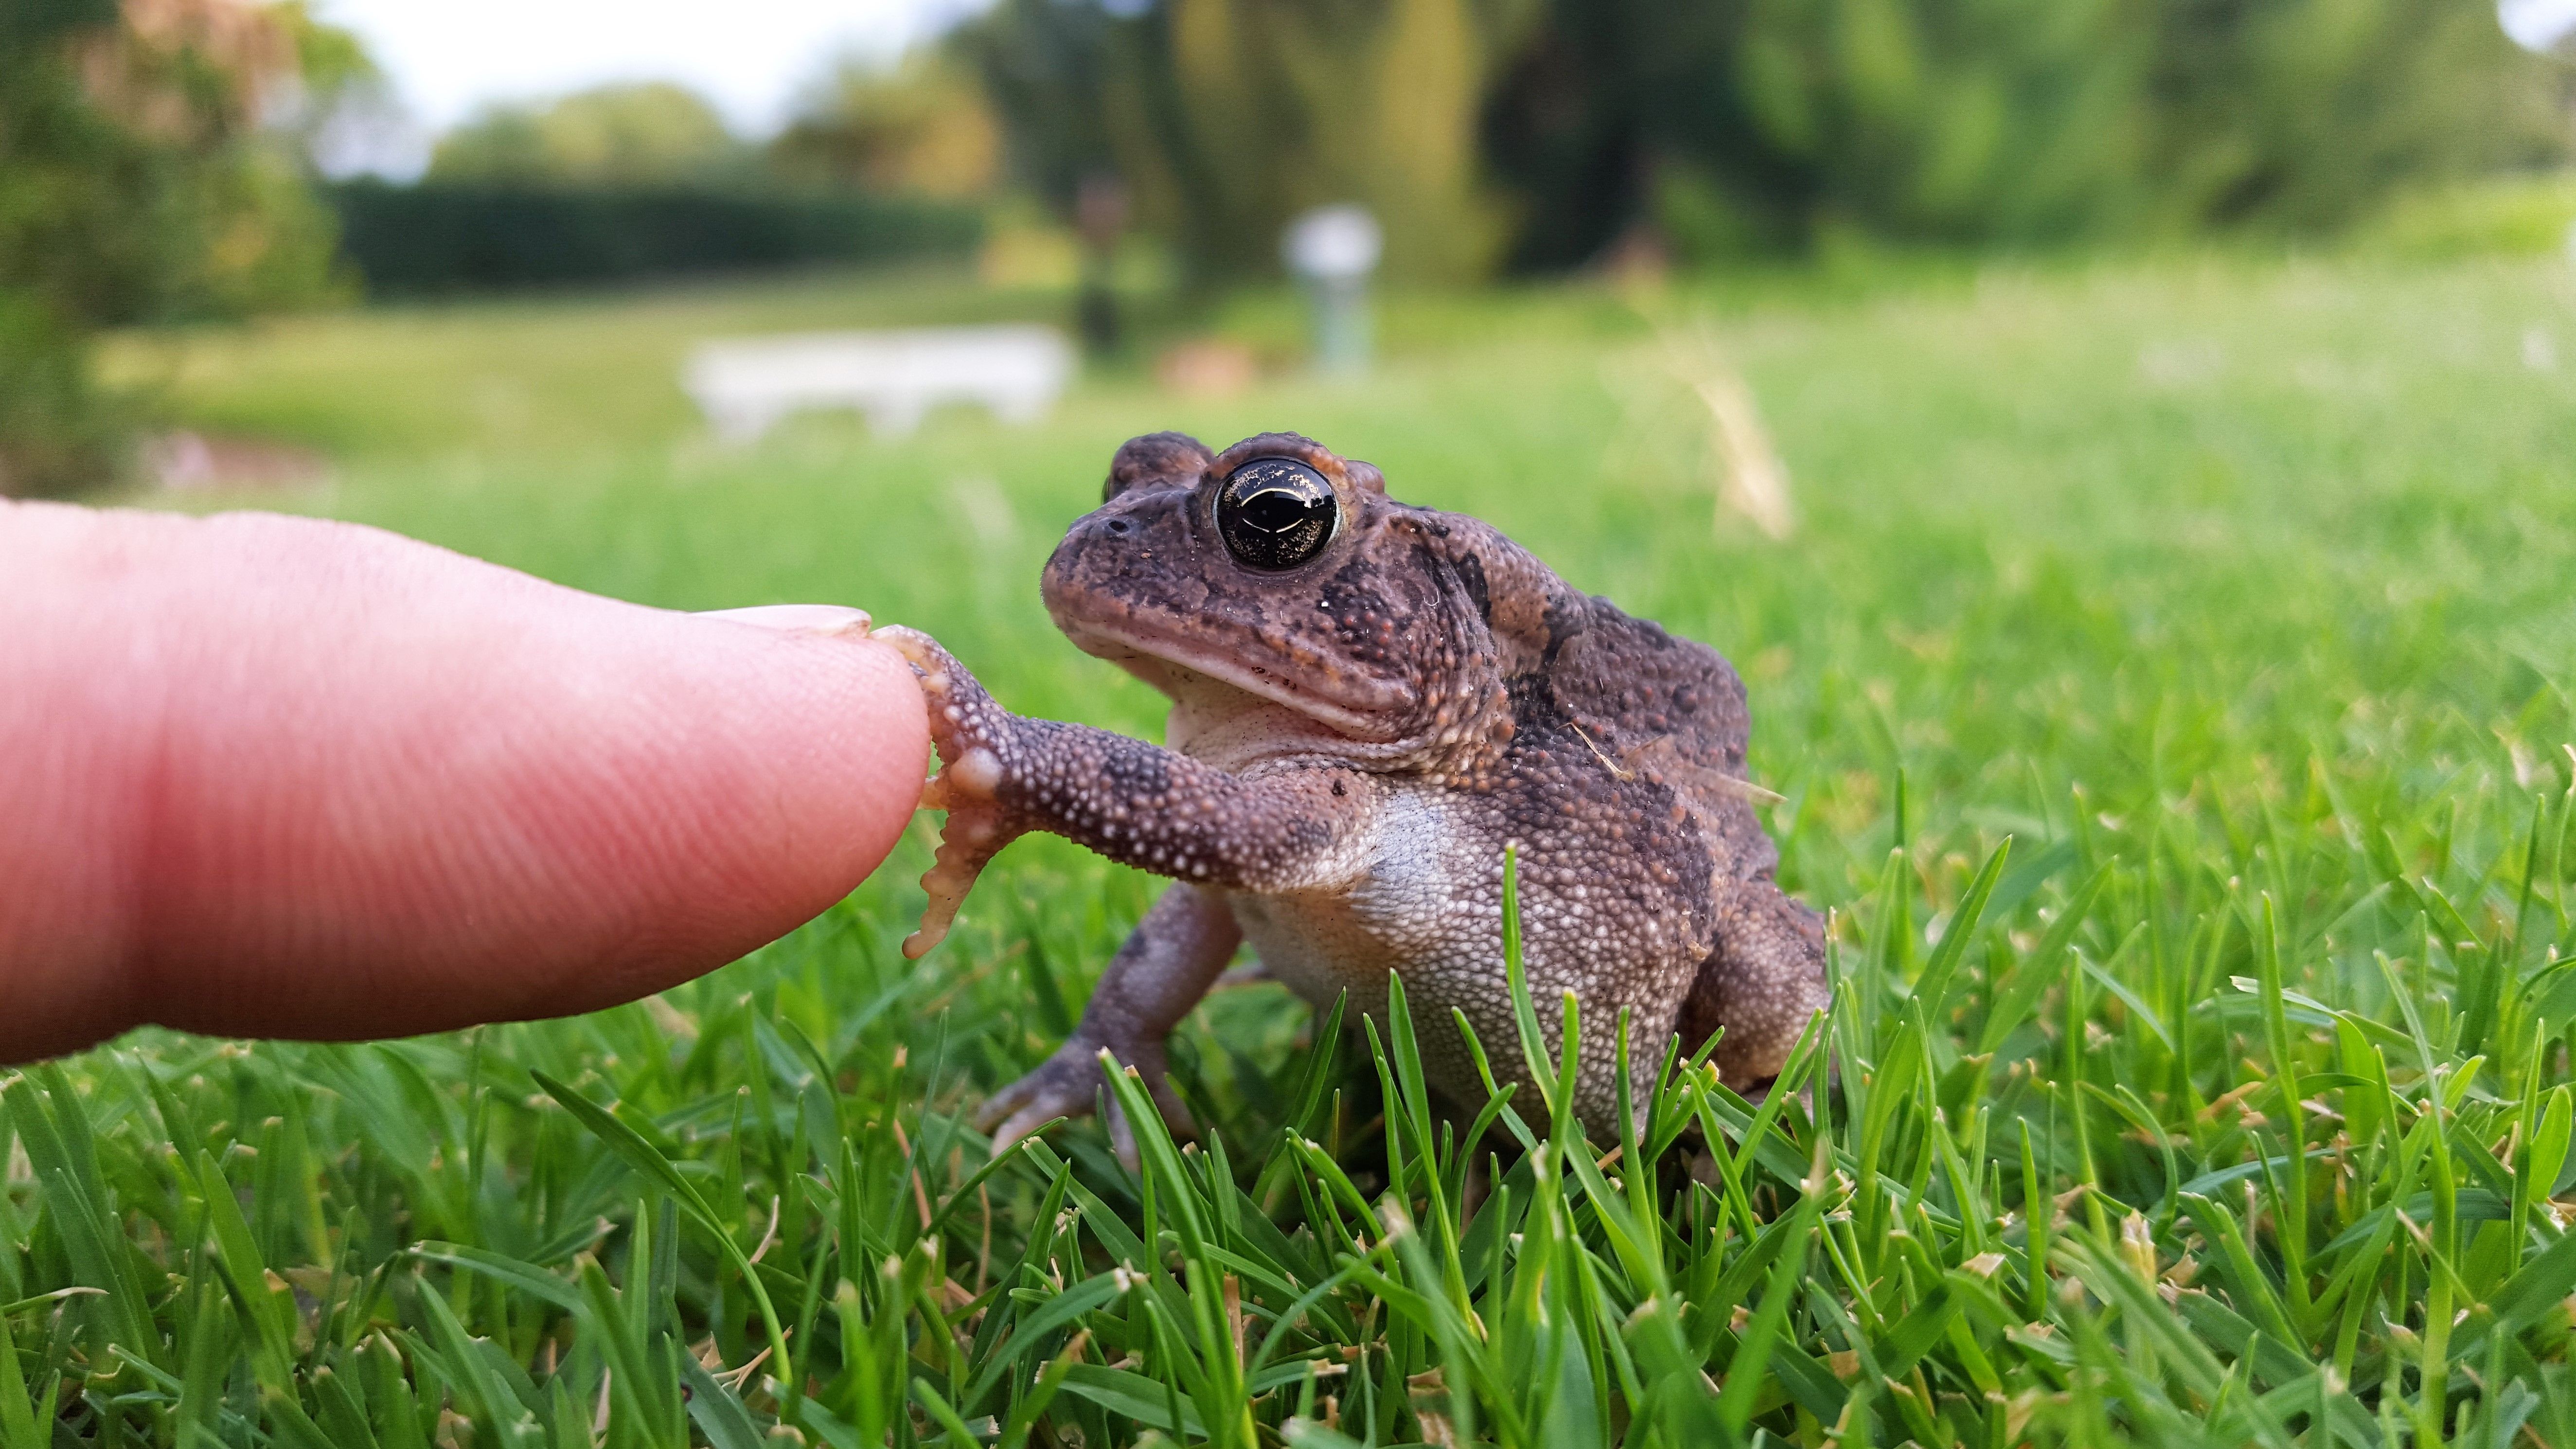 My Handshake with Nature.